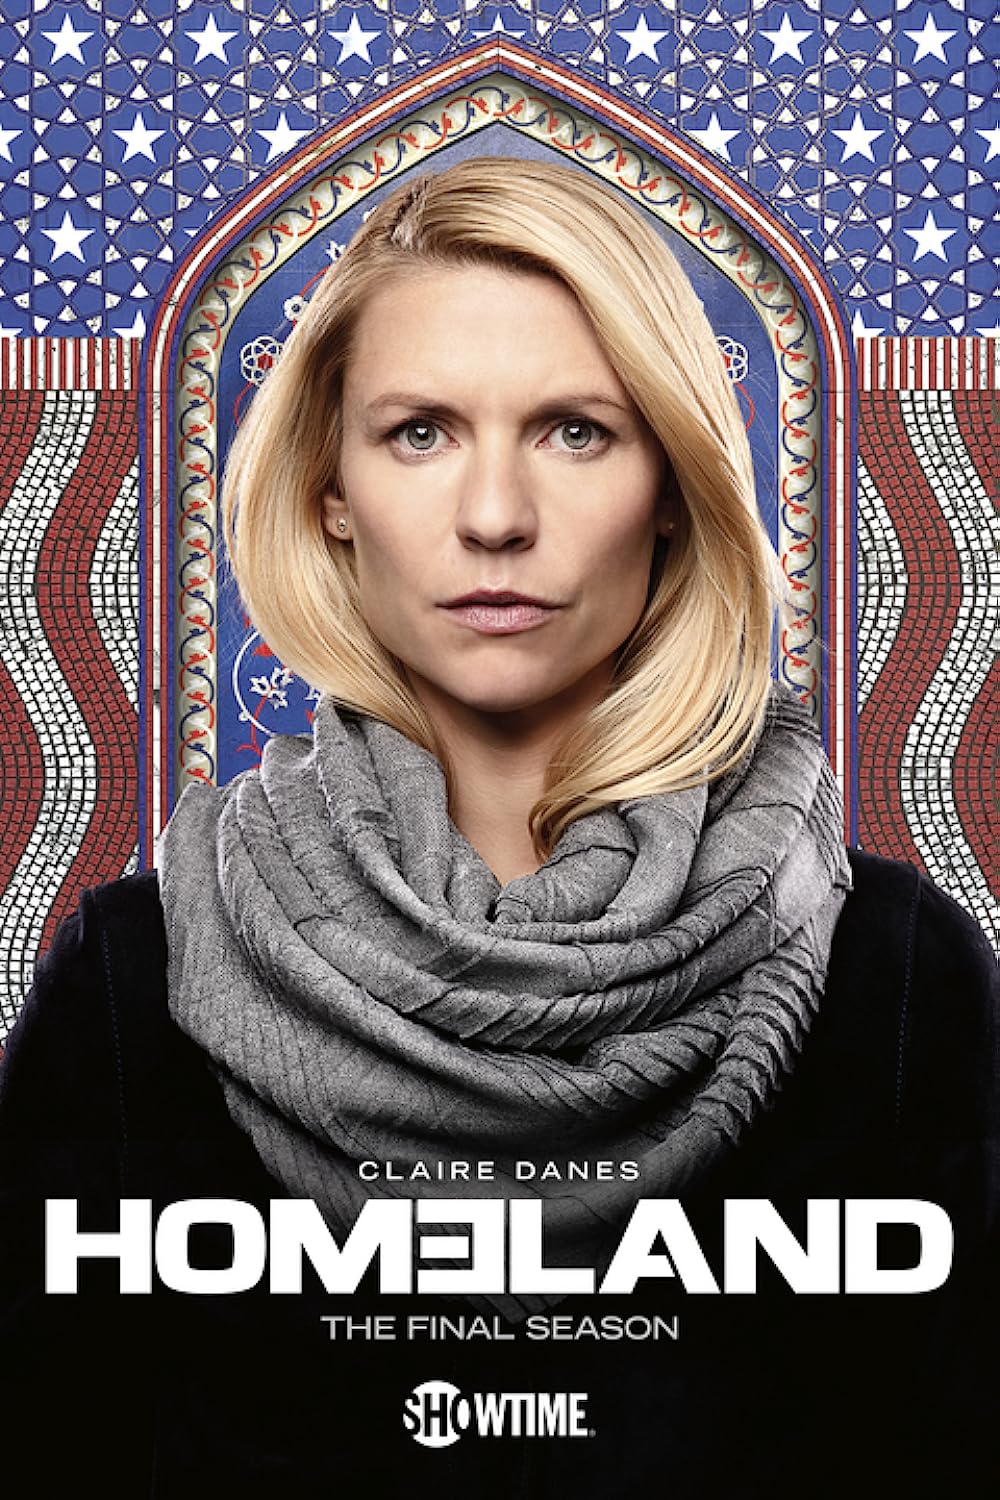 Homeland poster